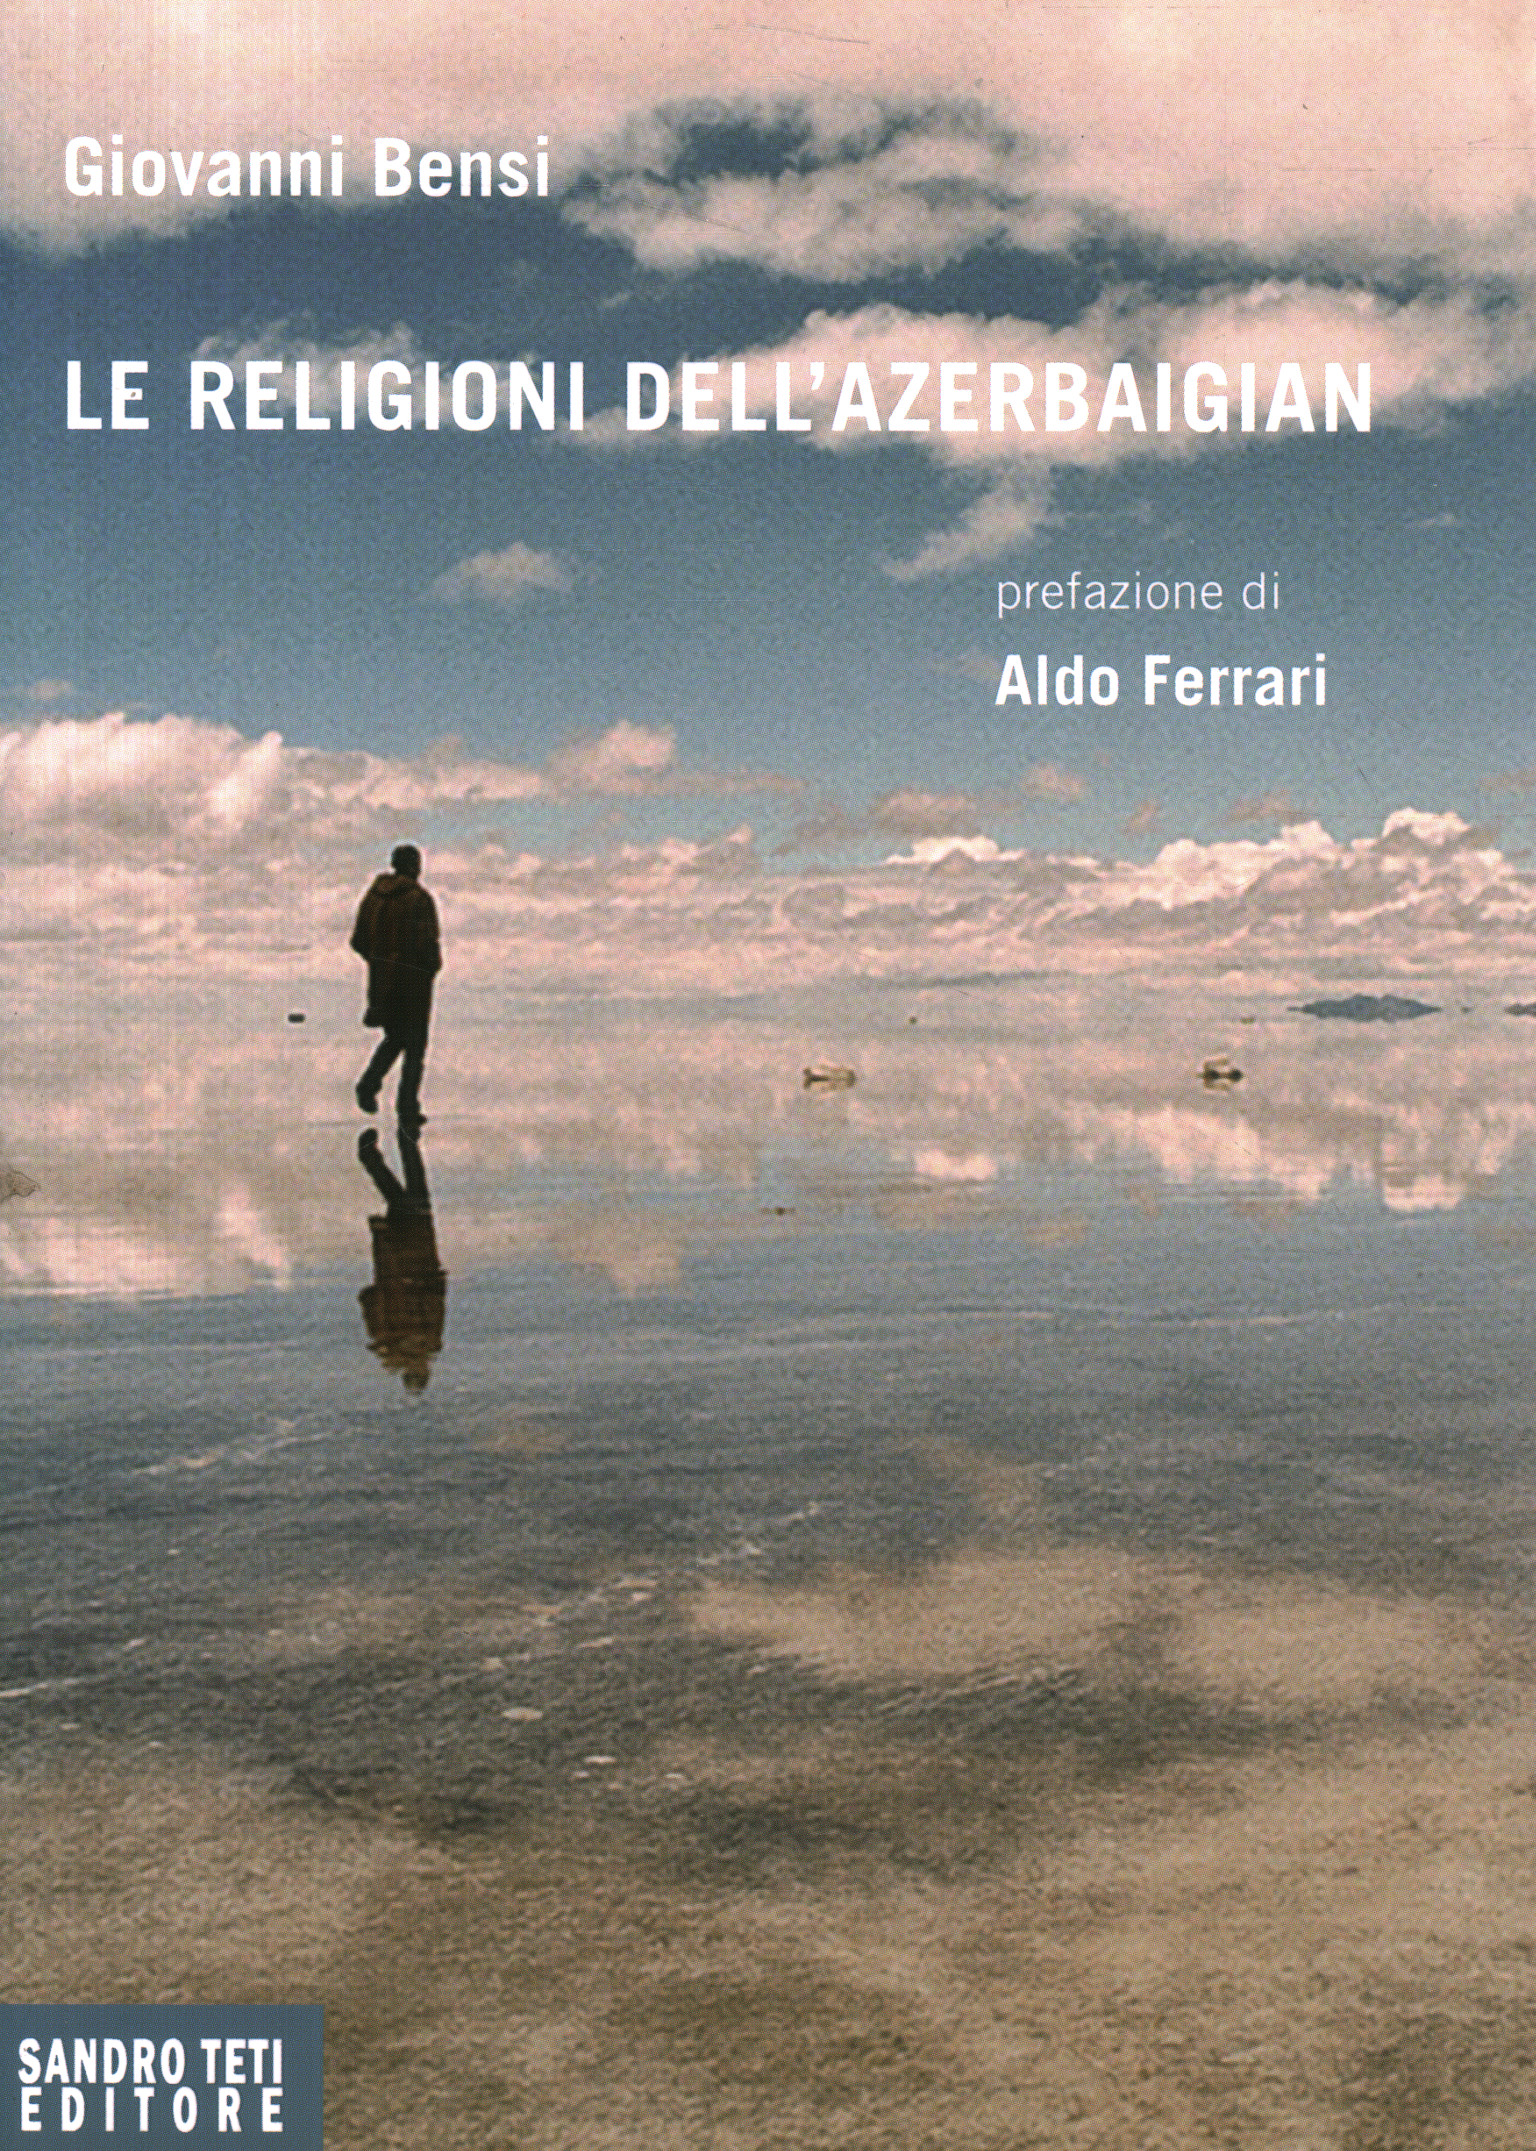 Bücher - Religion - Religionsgeschichte, Religionen Aserbaidschans